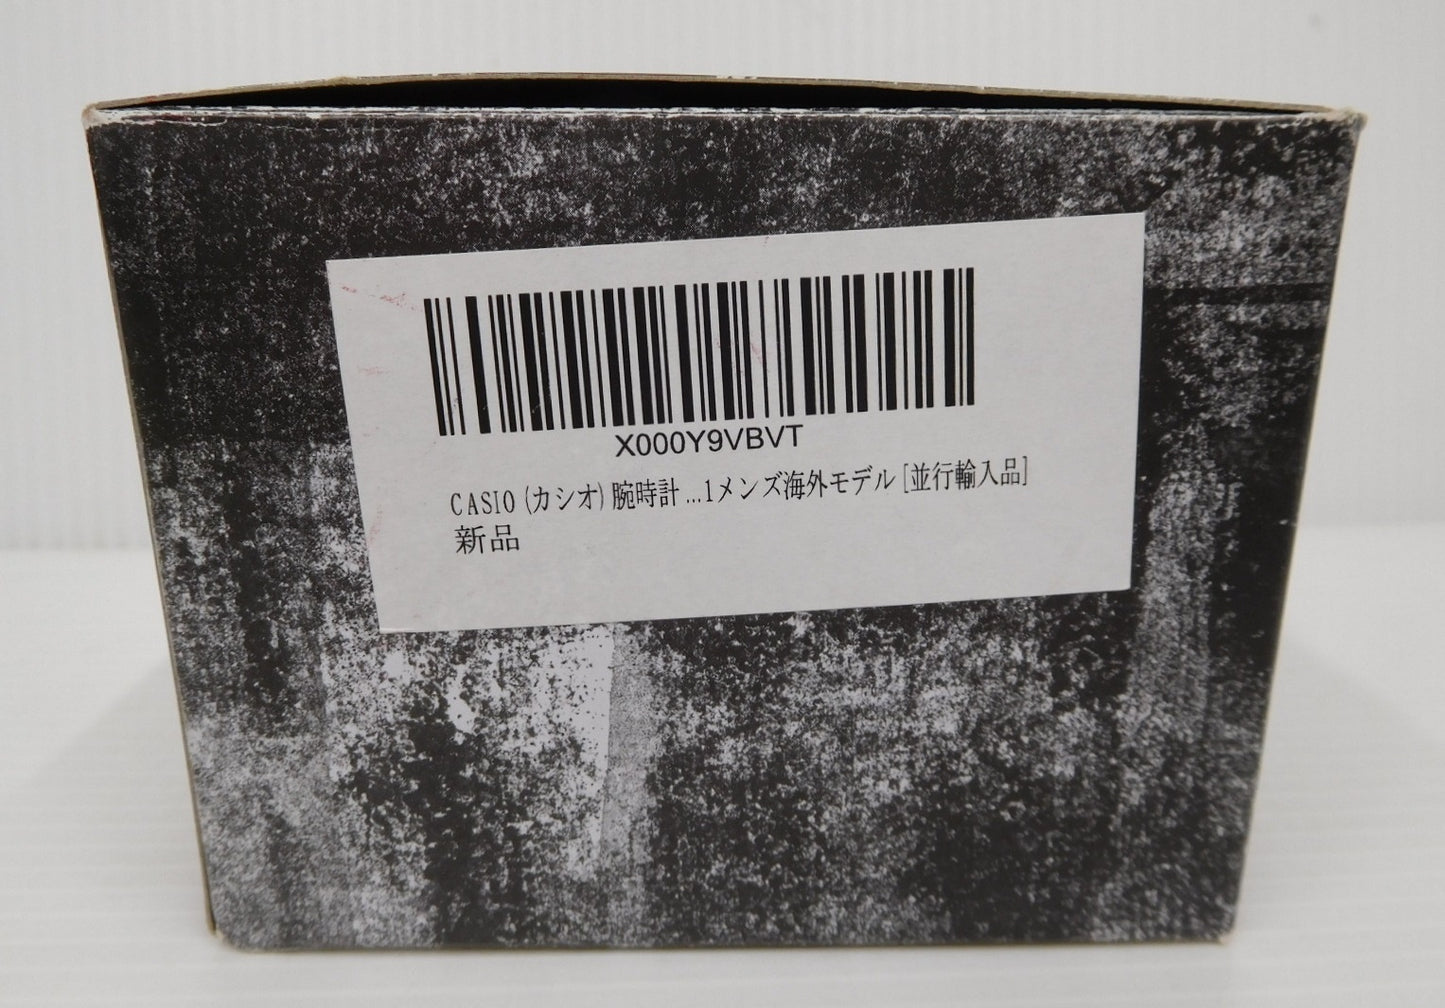 CASIO カシオ G-SHOCK ジーショック GBX-100-1DR 並行輸入品 箱あり囗T巛